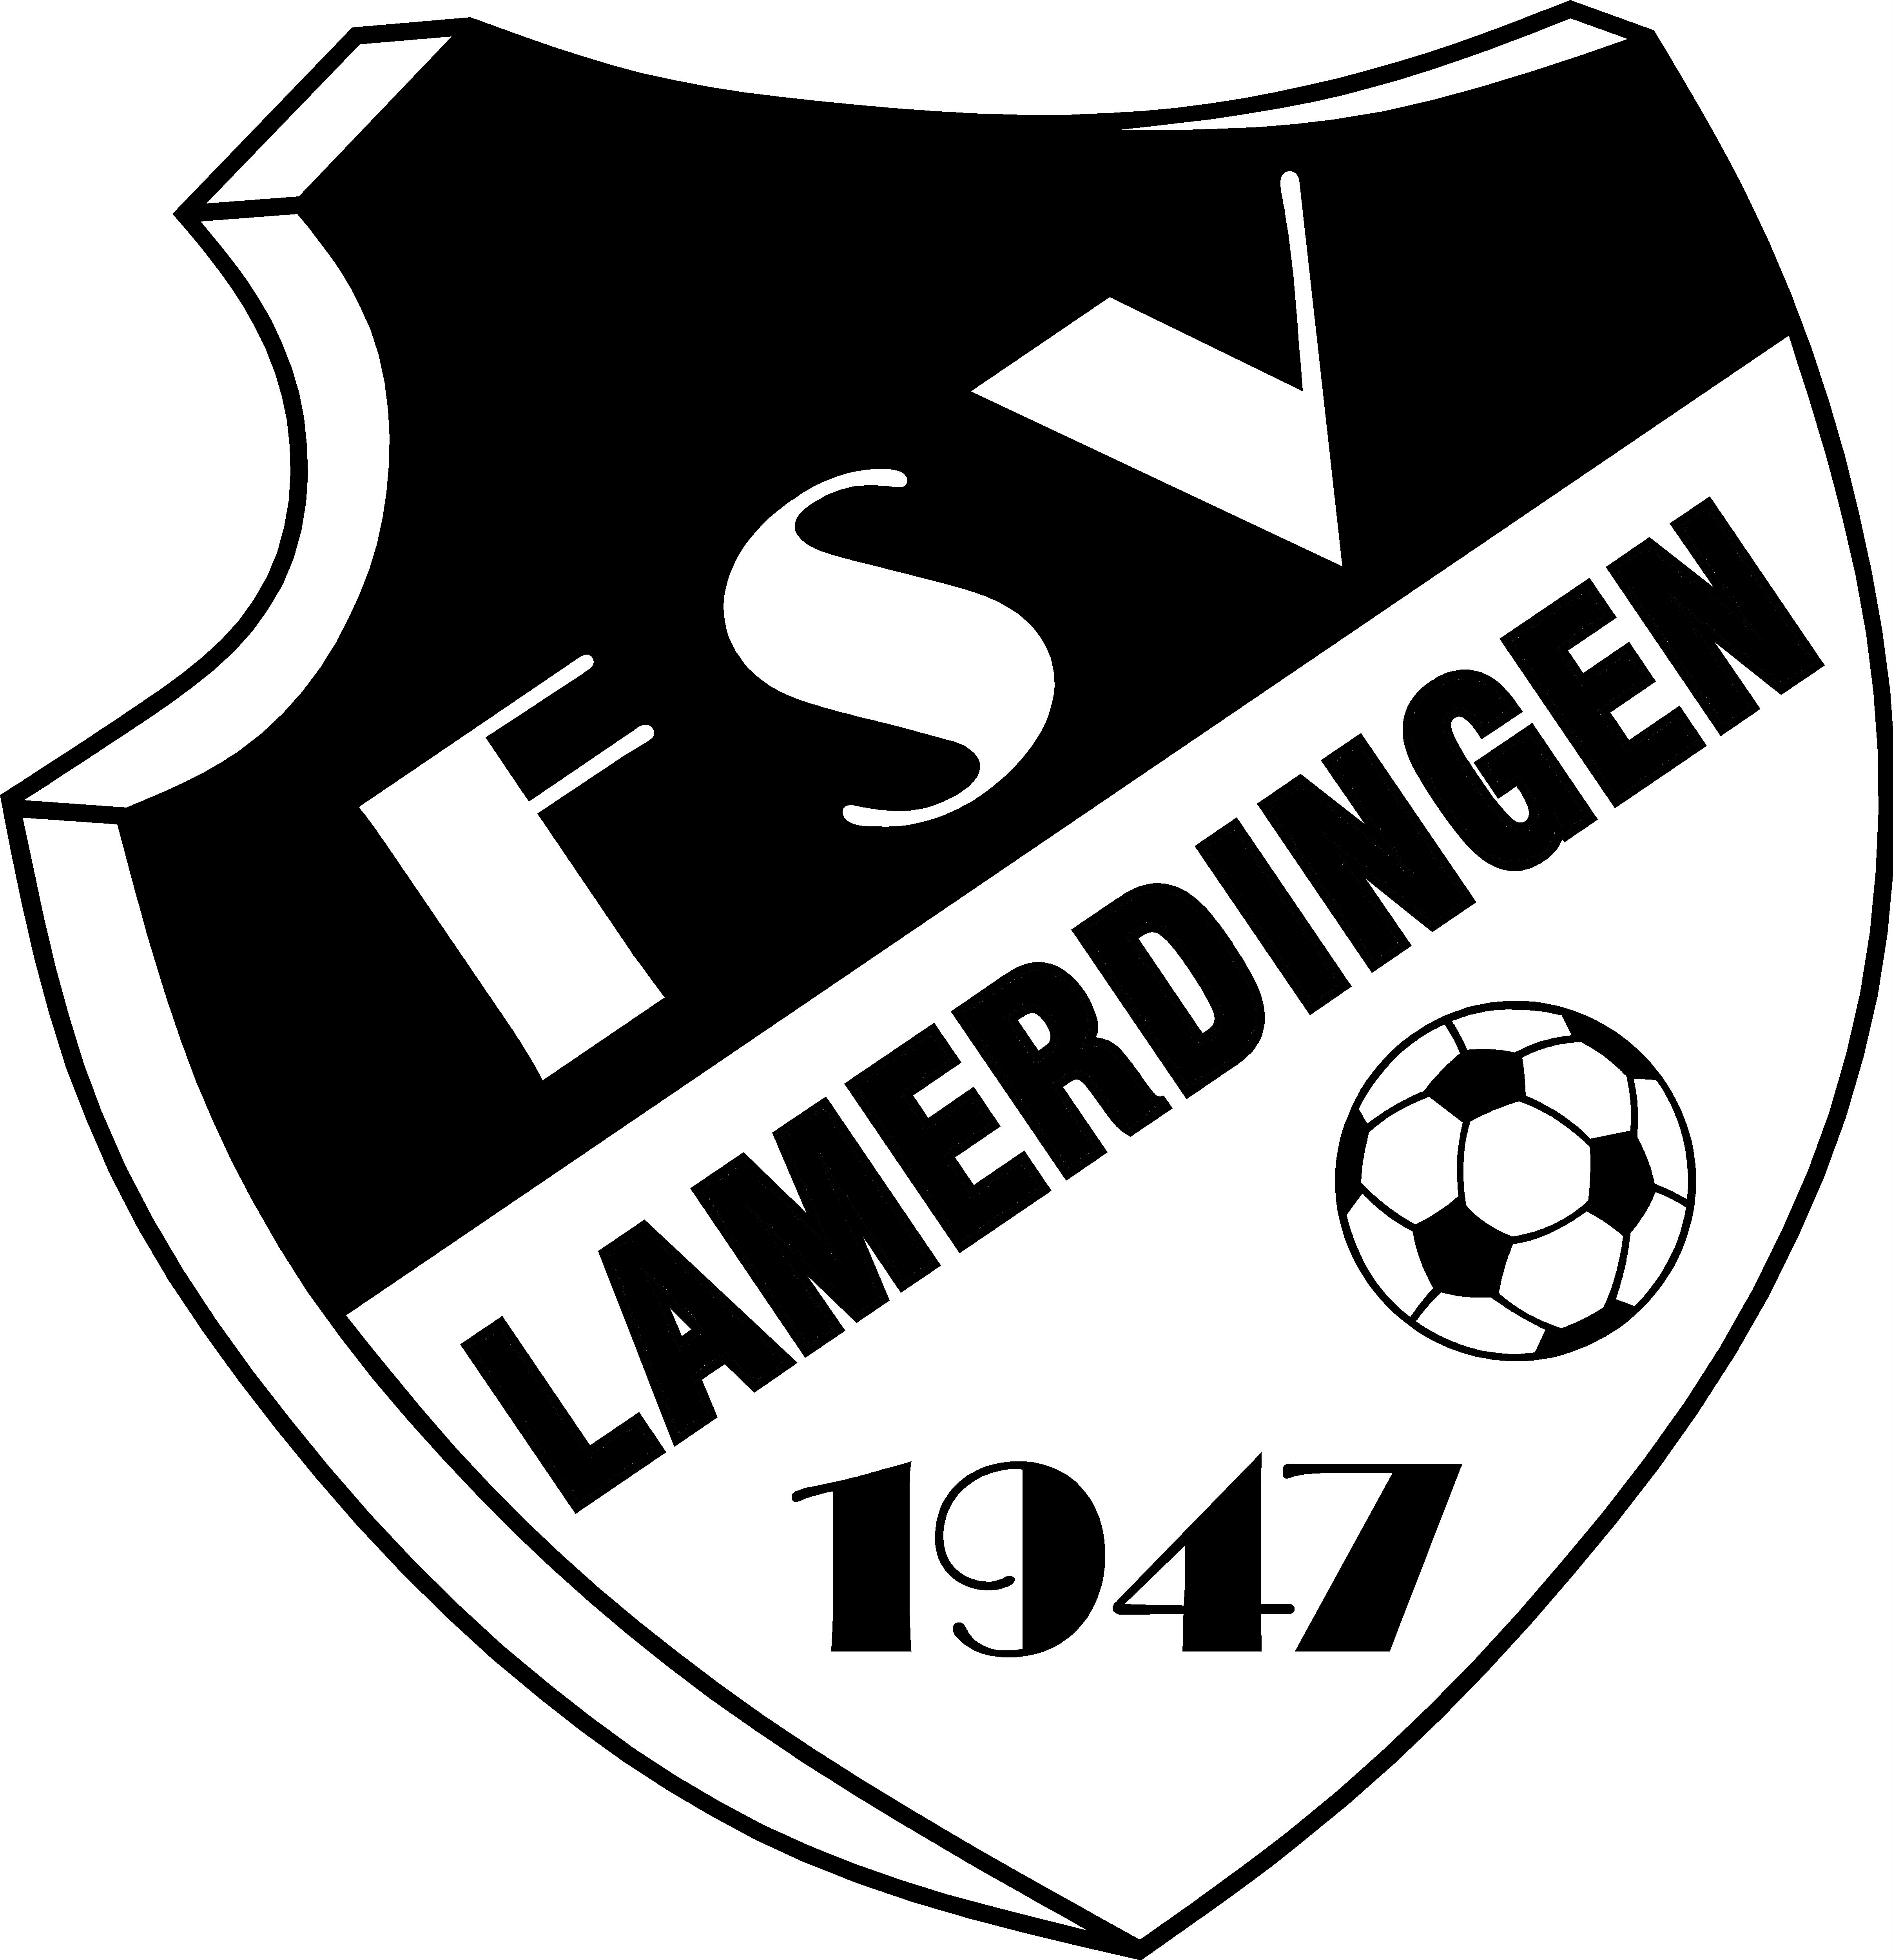 FSV Lamerdingen